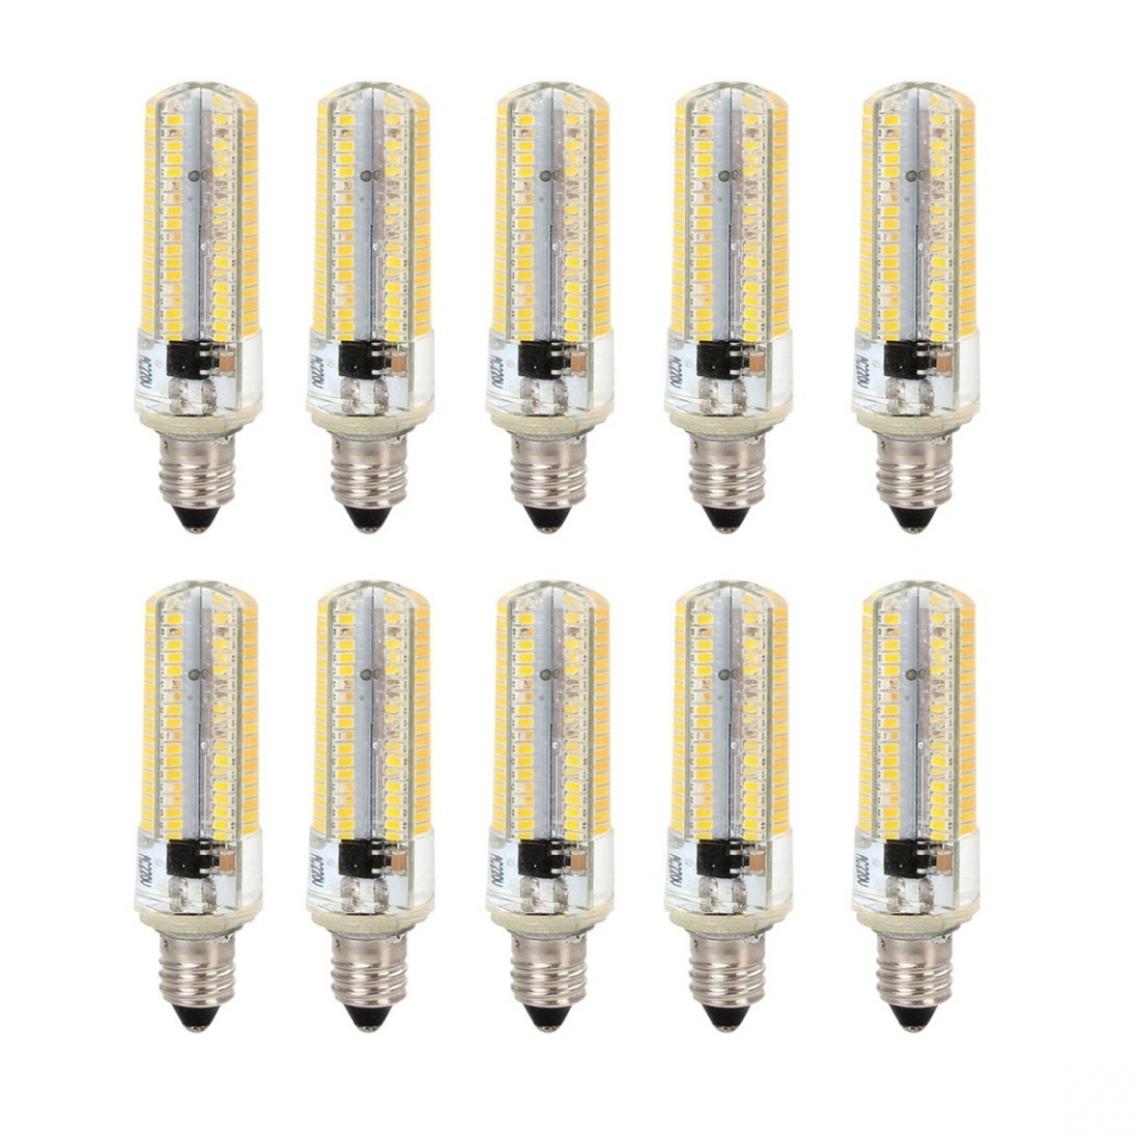 Wewoo - 10 PCS E11 7W 152 LED 3014 SMD 600-700 LM Ampoules de maïs en silicone à intensité variableblanc chaudCA 110V - Ampoules LED